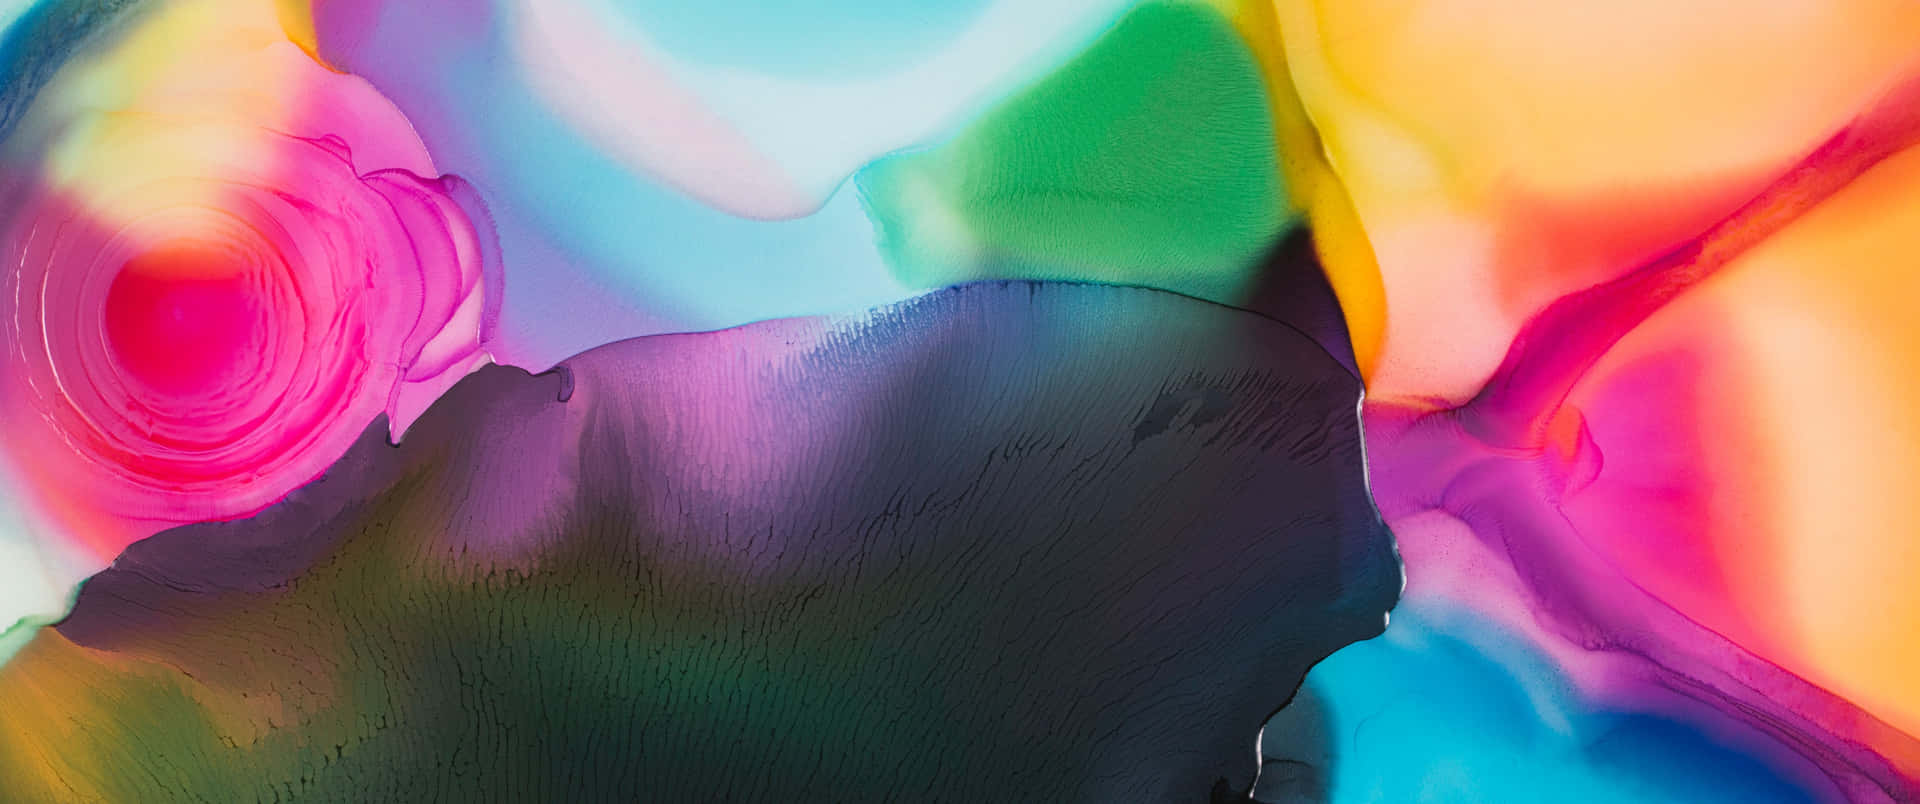 Arteabstracto Colorido En Acuarela. Fondo de pantalla